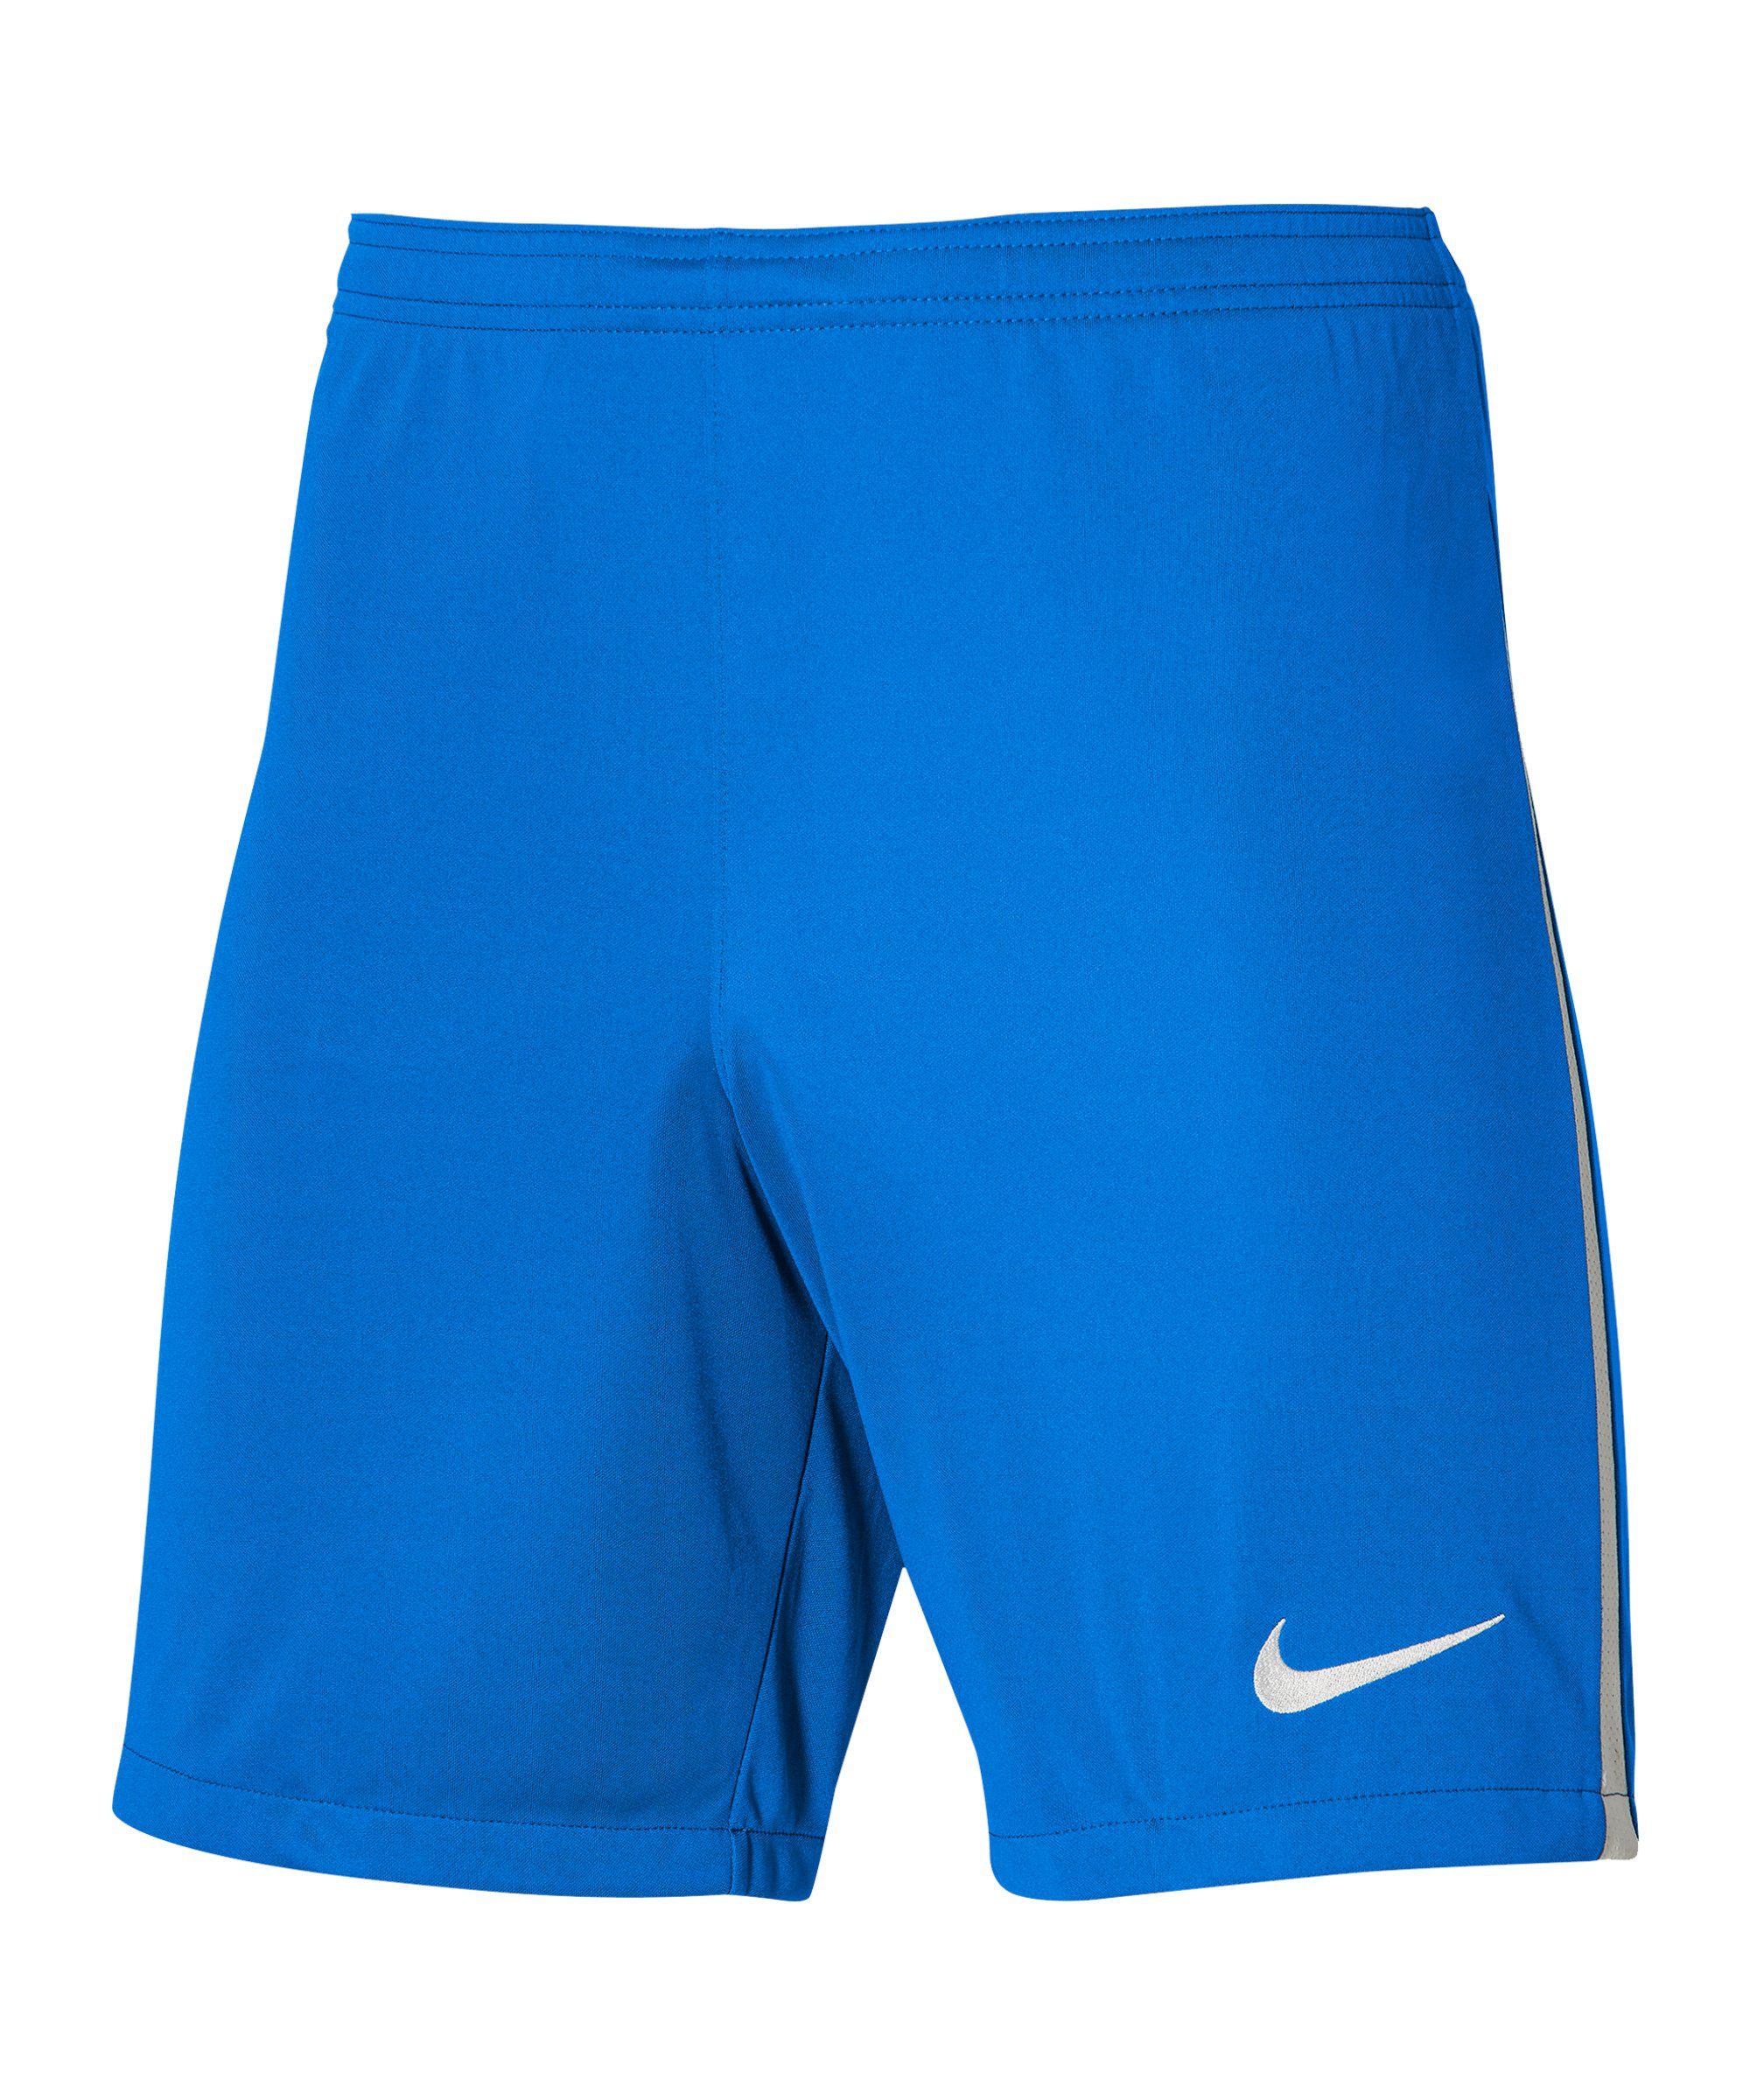 Sporthose Short Kids League III Nike dunkelblauweissweiss